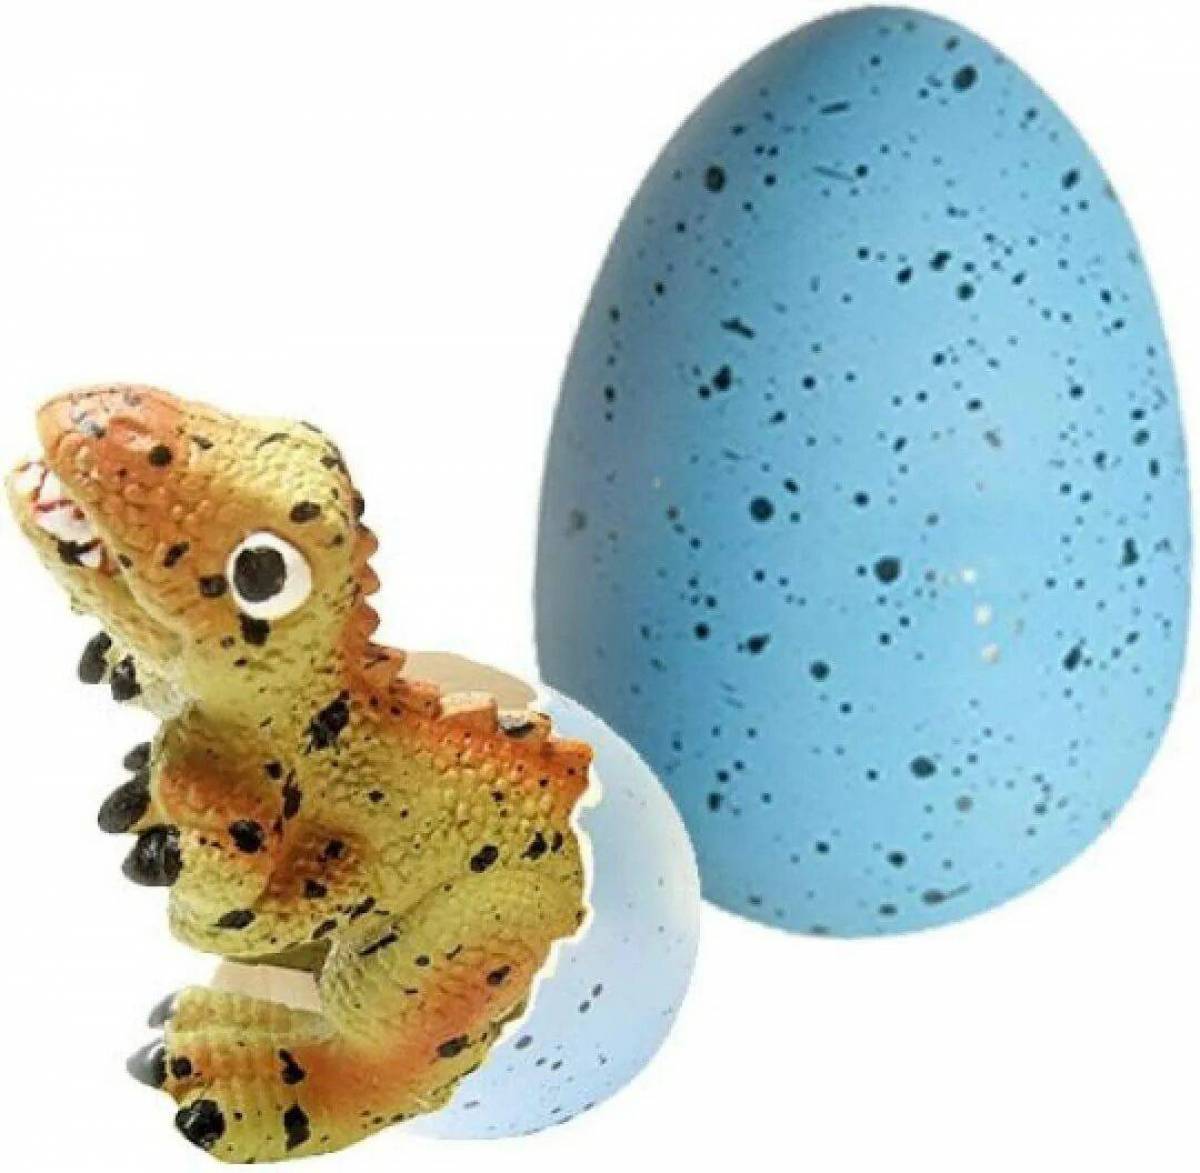 Купить яйцо детям. Dinosaur Egg игрушка. Игрушка динозавр вылупляется из яйца. Яйцо из которого вылупляется динозавр. Динозавр с яйцом.